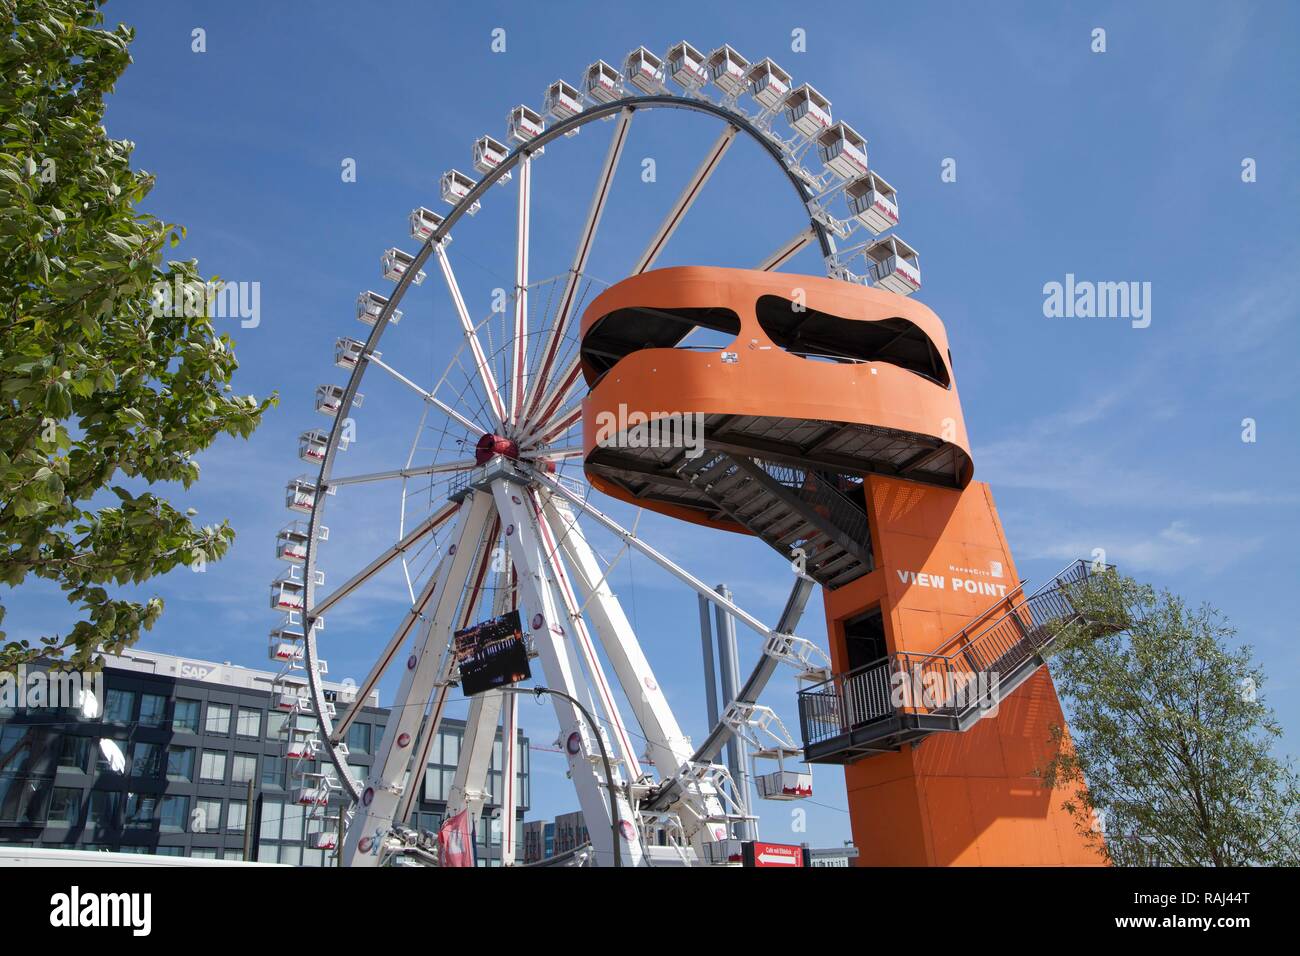 Rueda de Ferris y punto de vista, HafenCity, Hamburgo, PublicGround trimestre Foto de stock